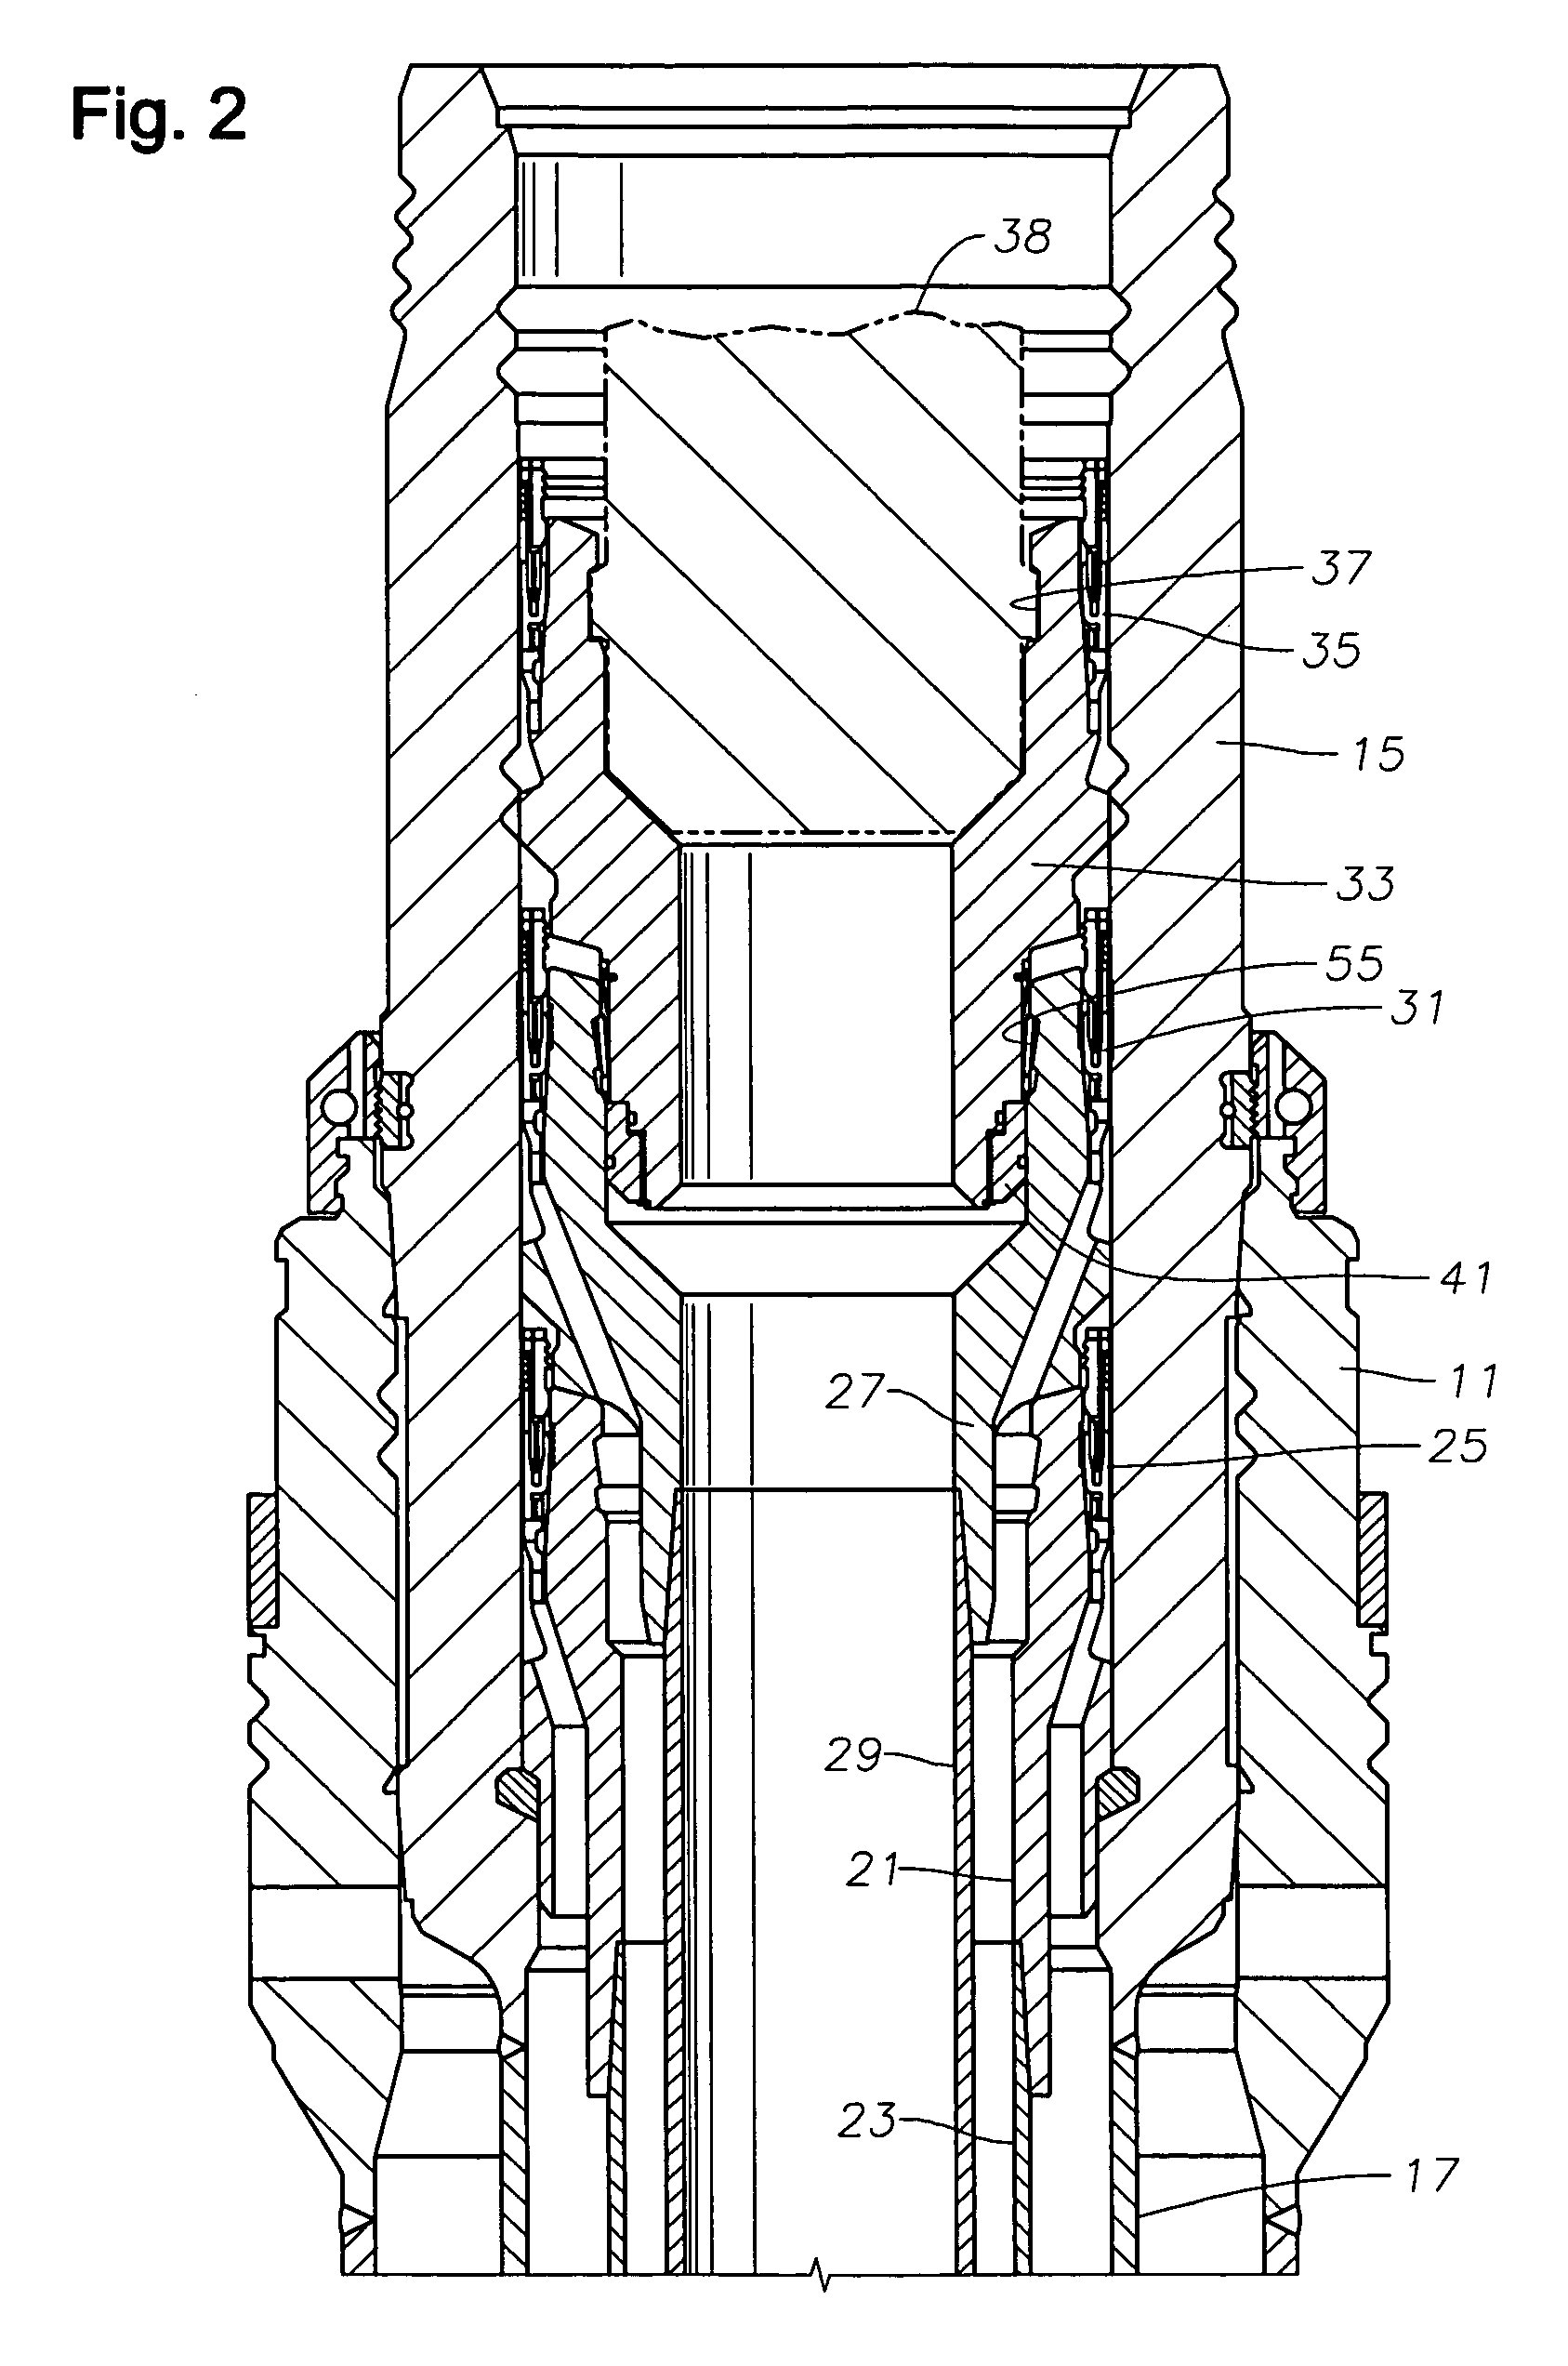 Metal-to-metal seal for bridging hanger or tieback connection